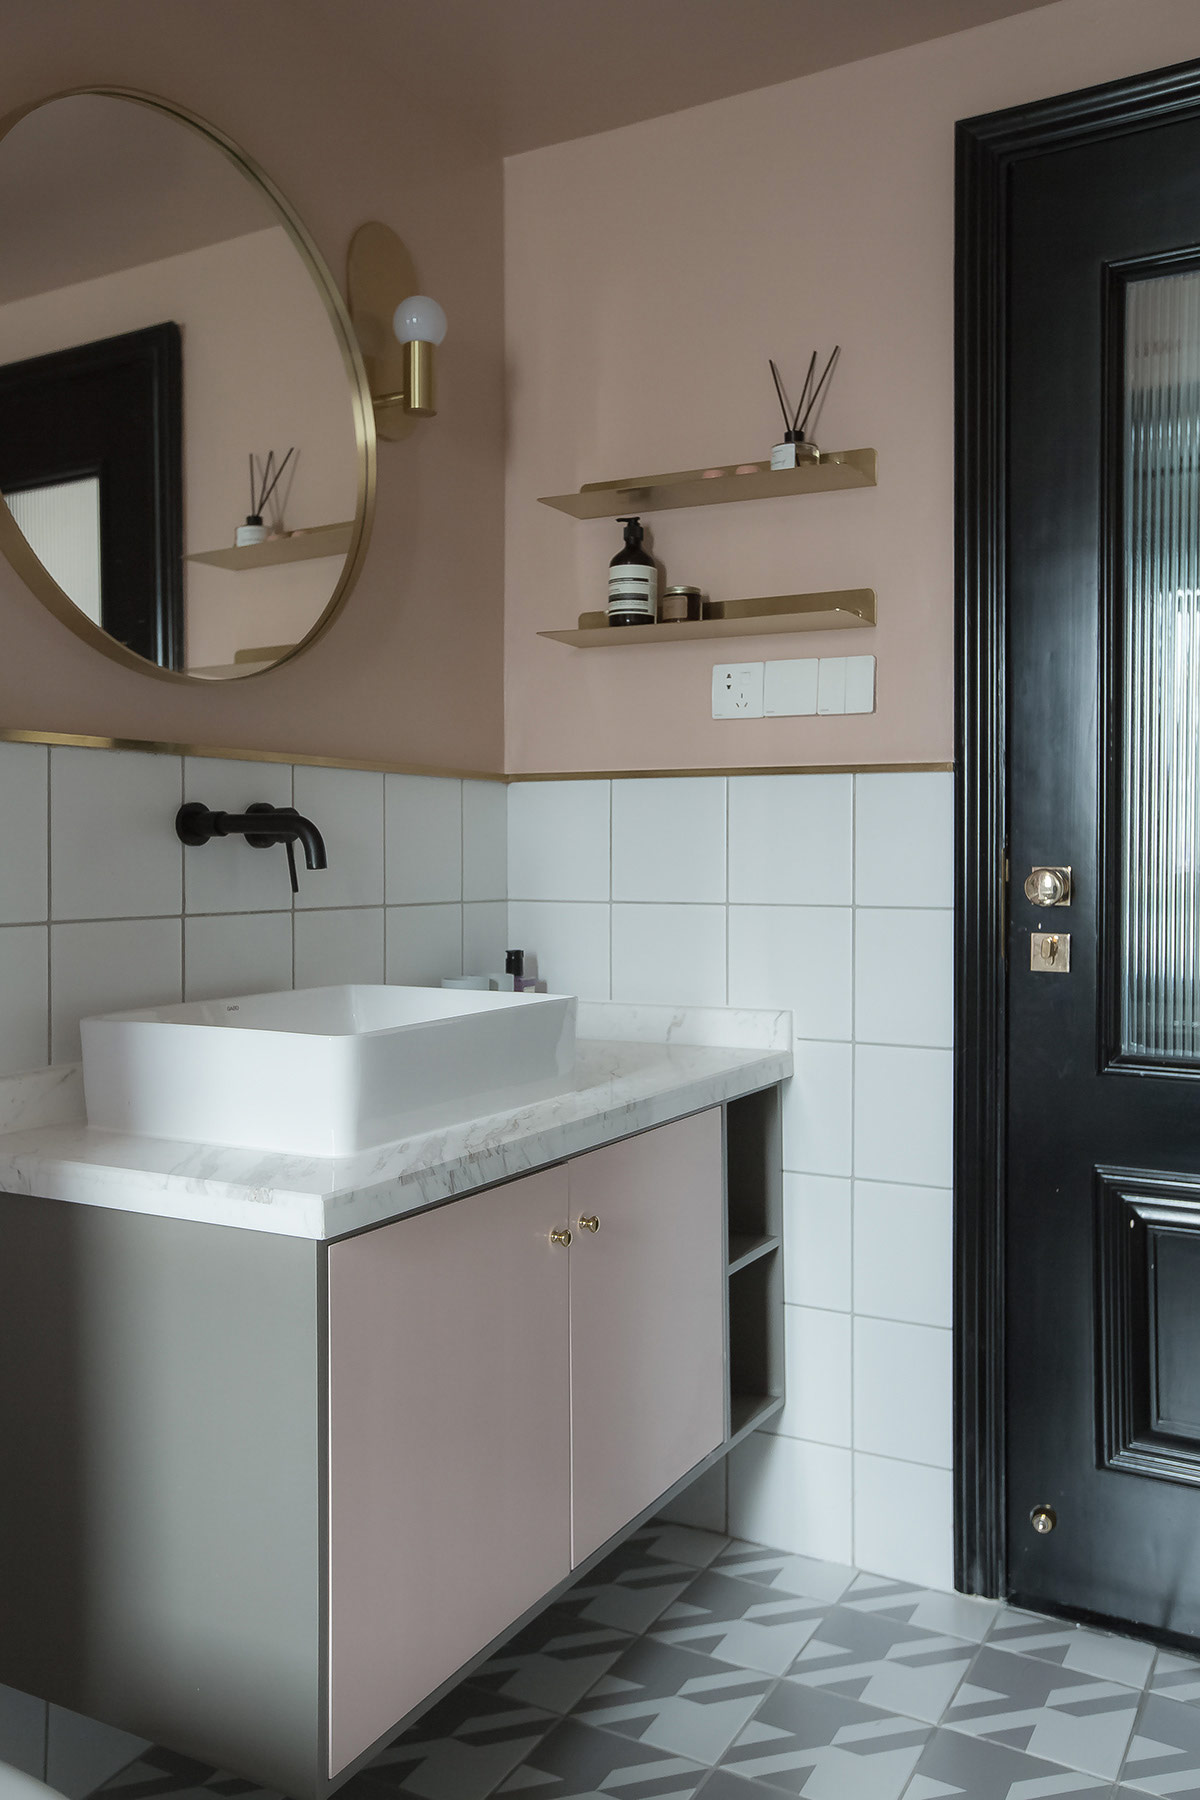 Gương tròn lớn với khung vàng kim loại và đèn treo tường phòng tắm tạo thành một bộ đôi quyến rũ phía trên bồn rửa.